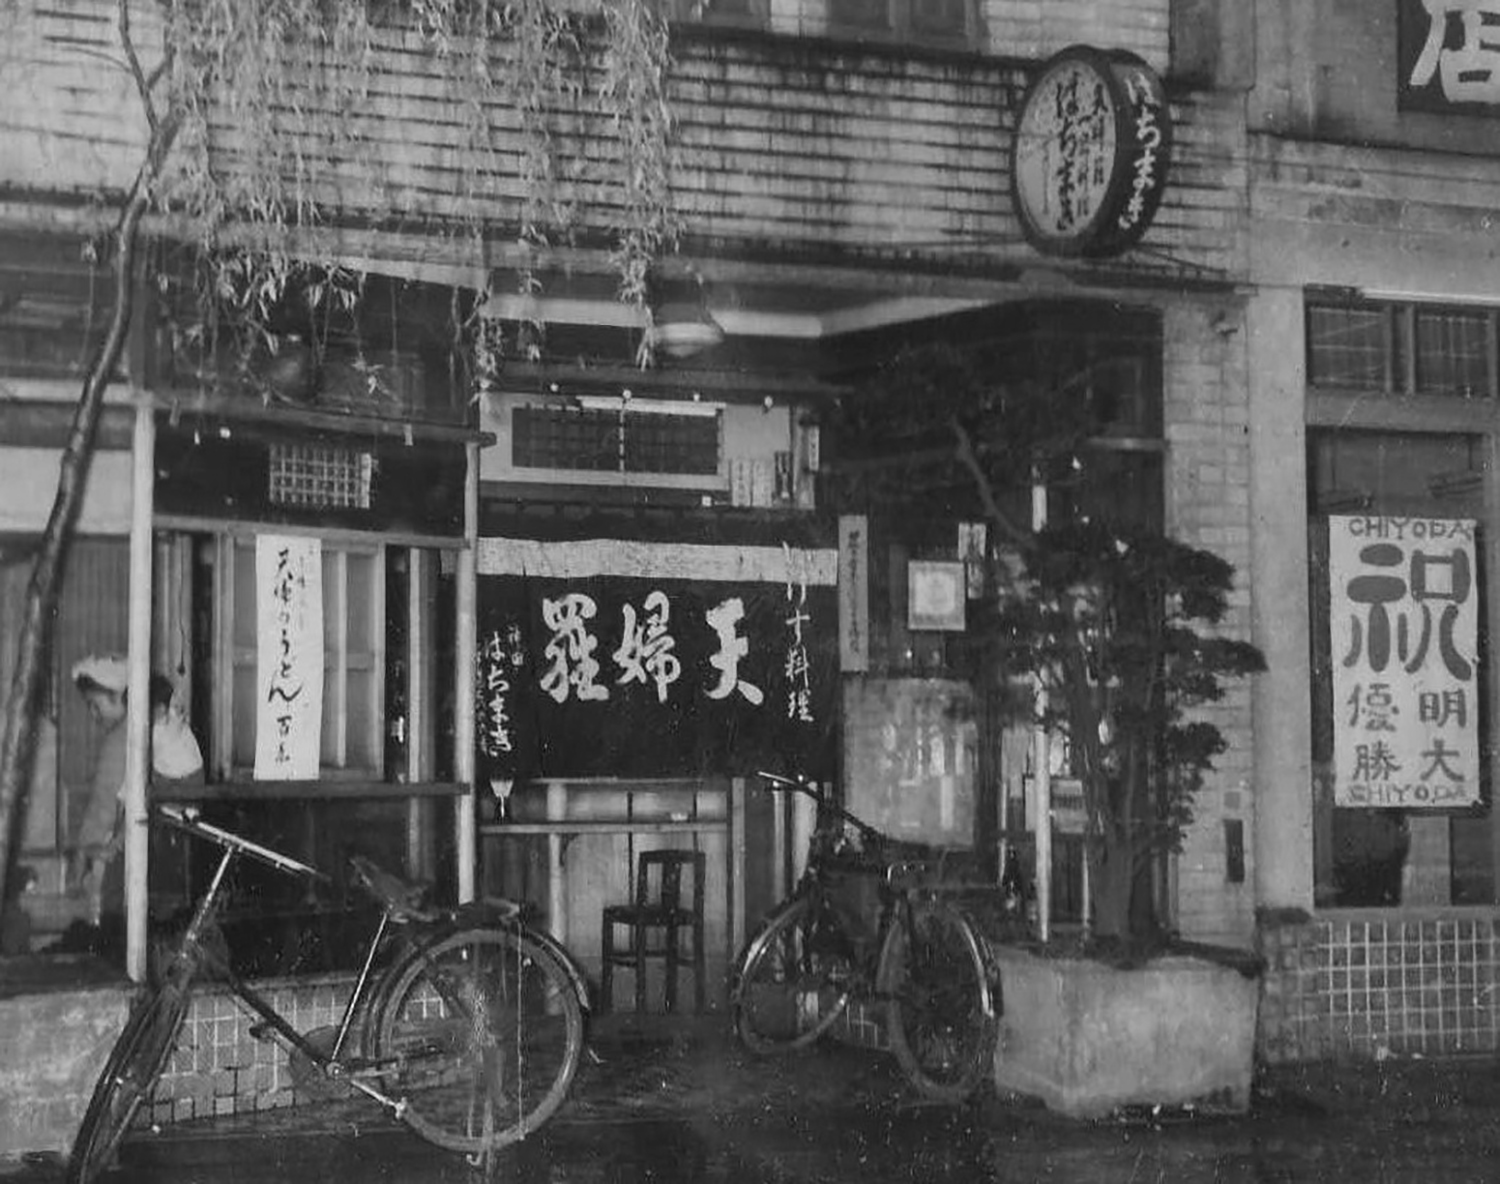 昭和20年代の店構え。神保町で店を再開した当時の建物は、昭和2年に建てられた近代建築。